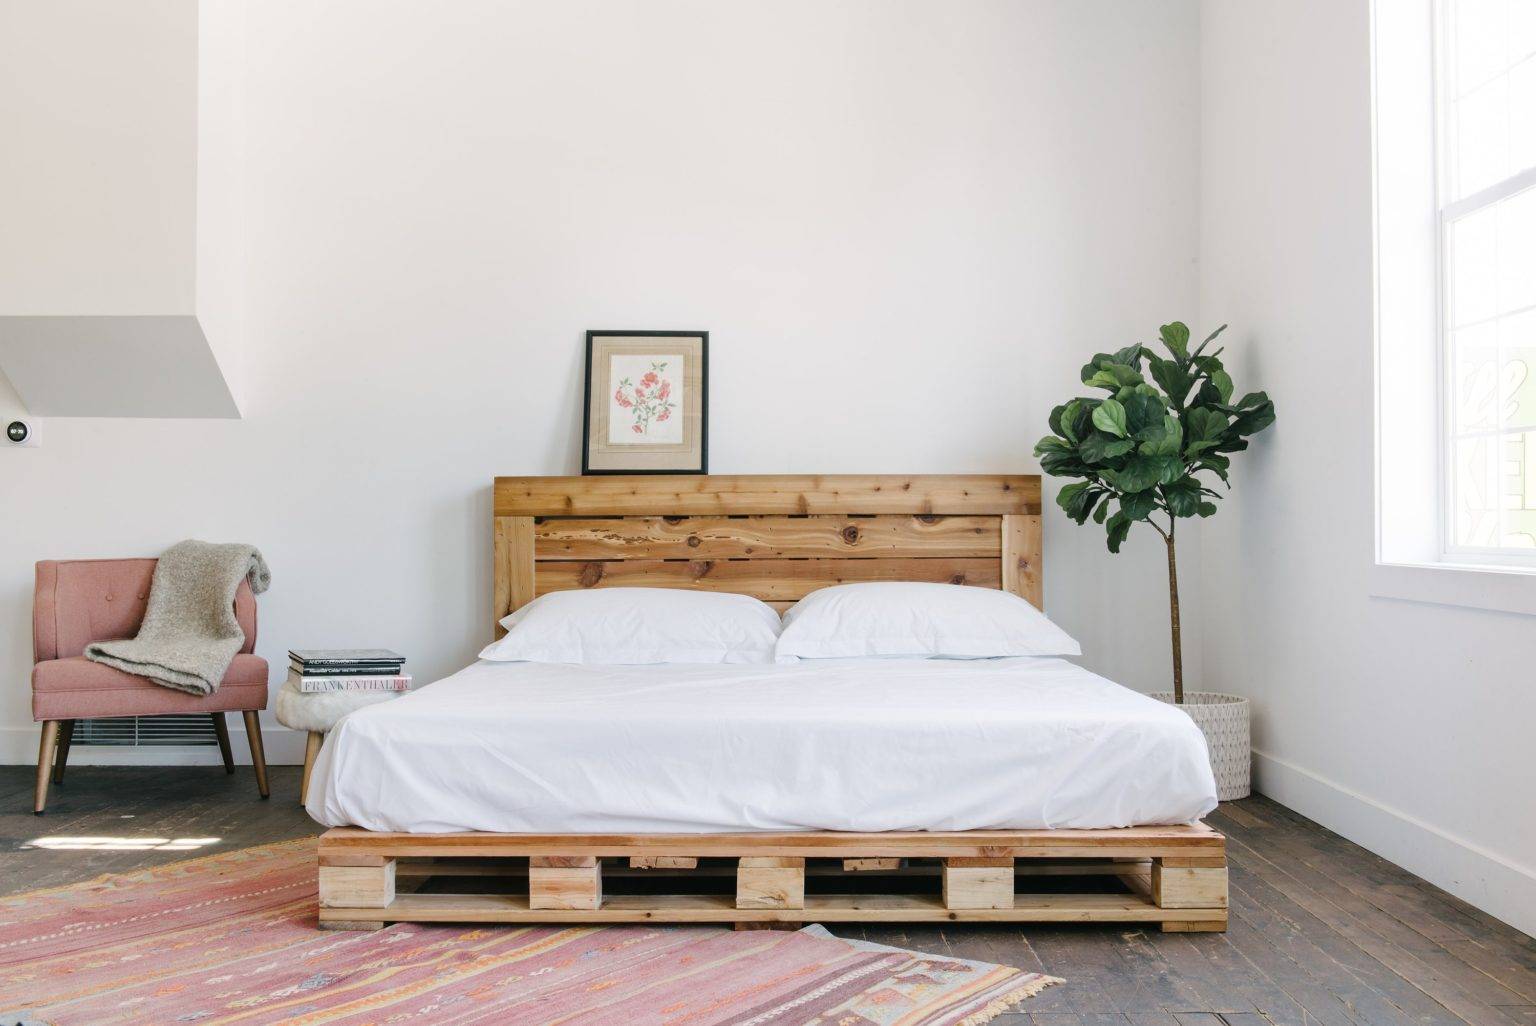 Phòng ngủ thiết kế theo phong cách minimalism (phong cách tối giản) với giường làm bằng gỗ pallet đặt ở vị trí trung tâm. Bên cạnh là chậu cây xanh tươi góp thêm sức sống cho căn phòng phủ đầy sắc trắng.